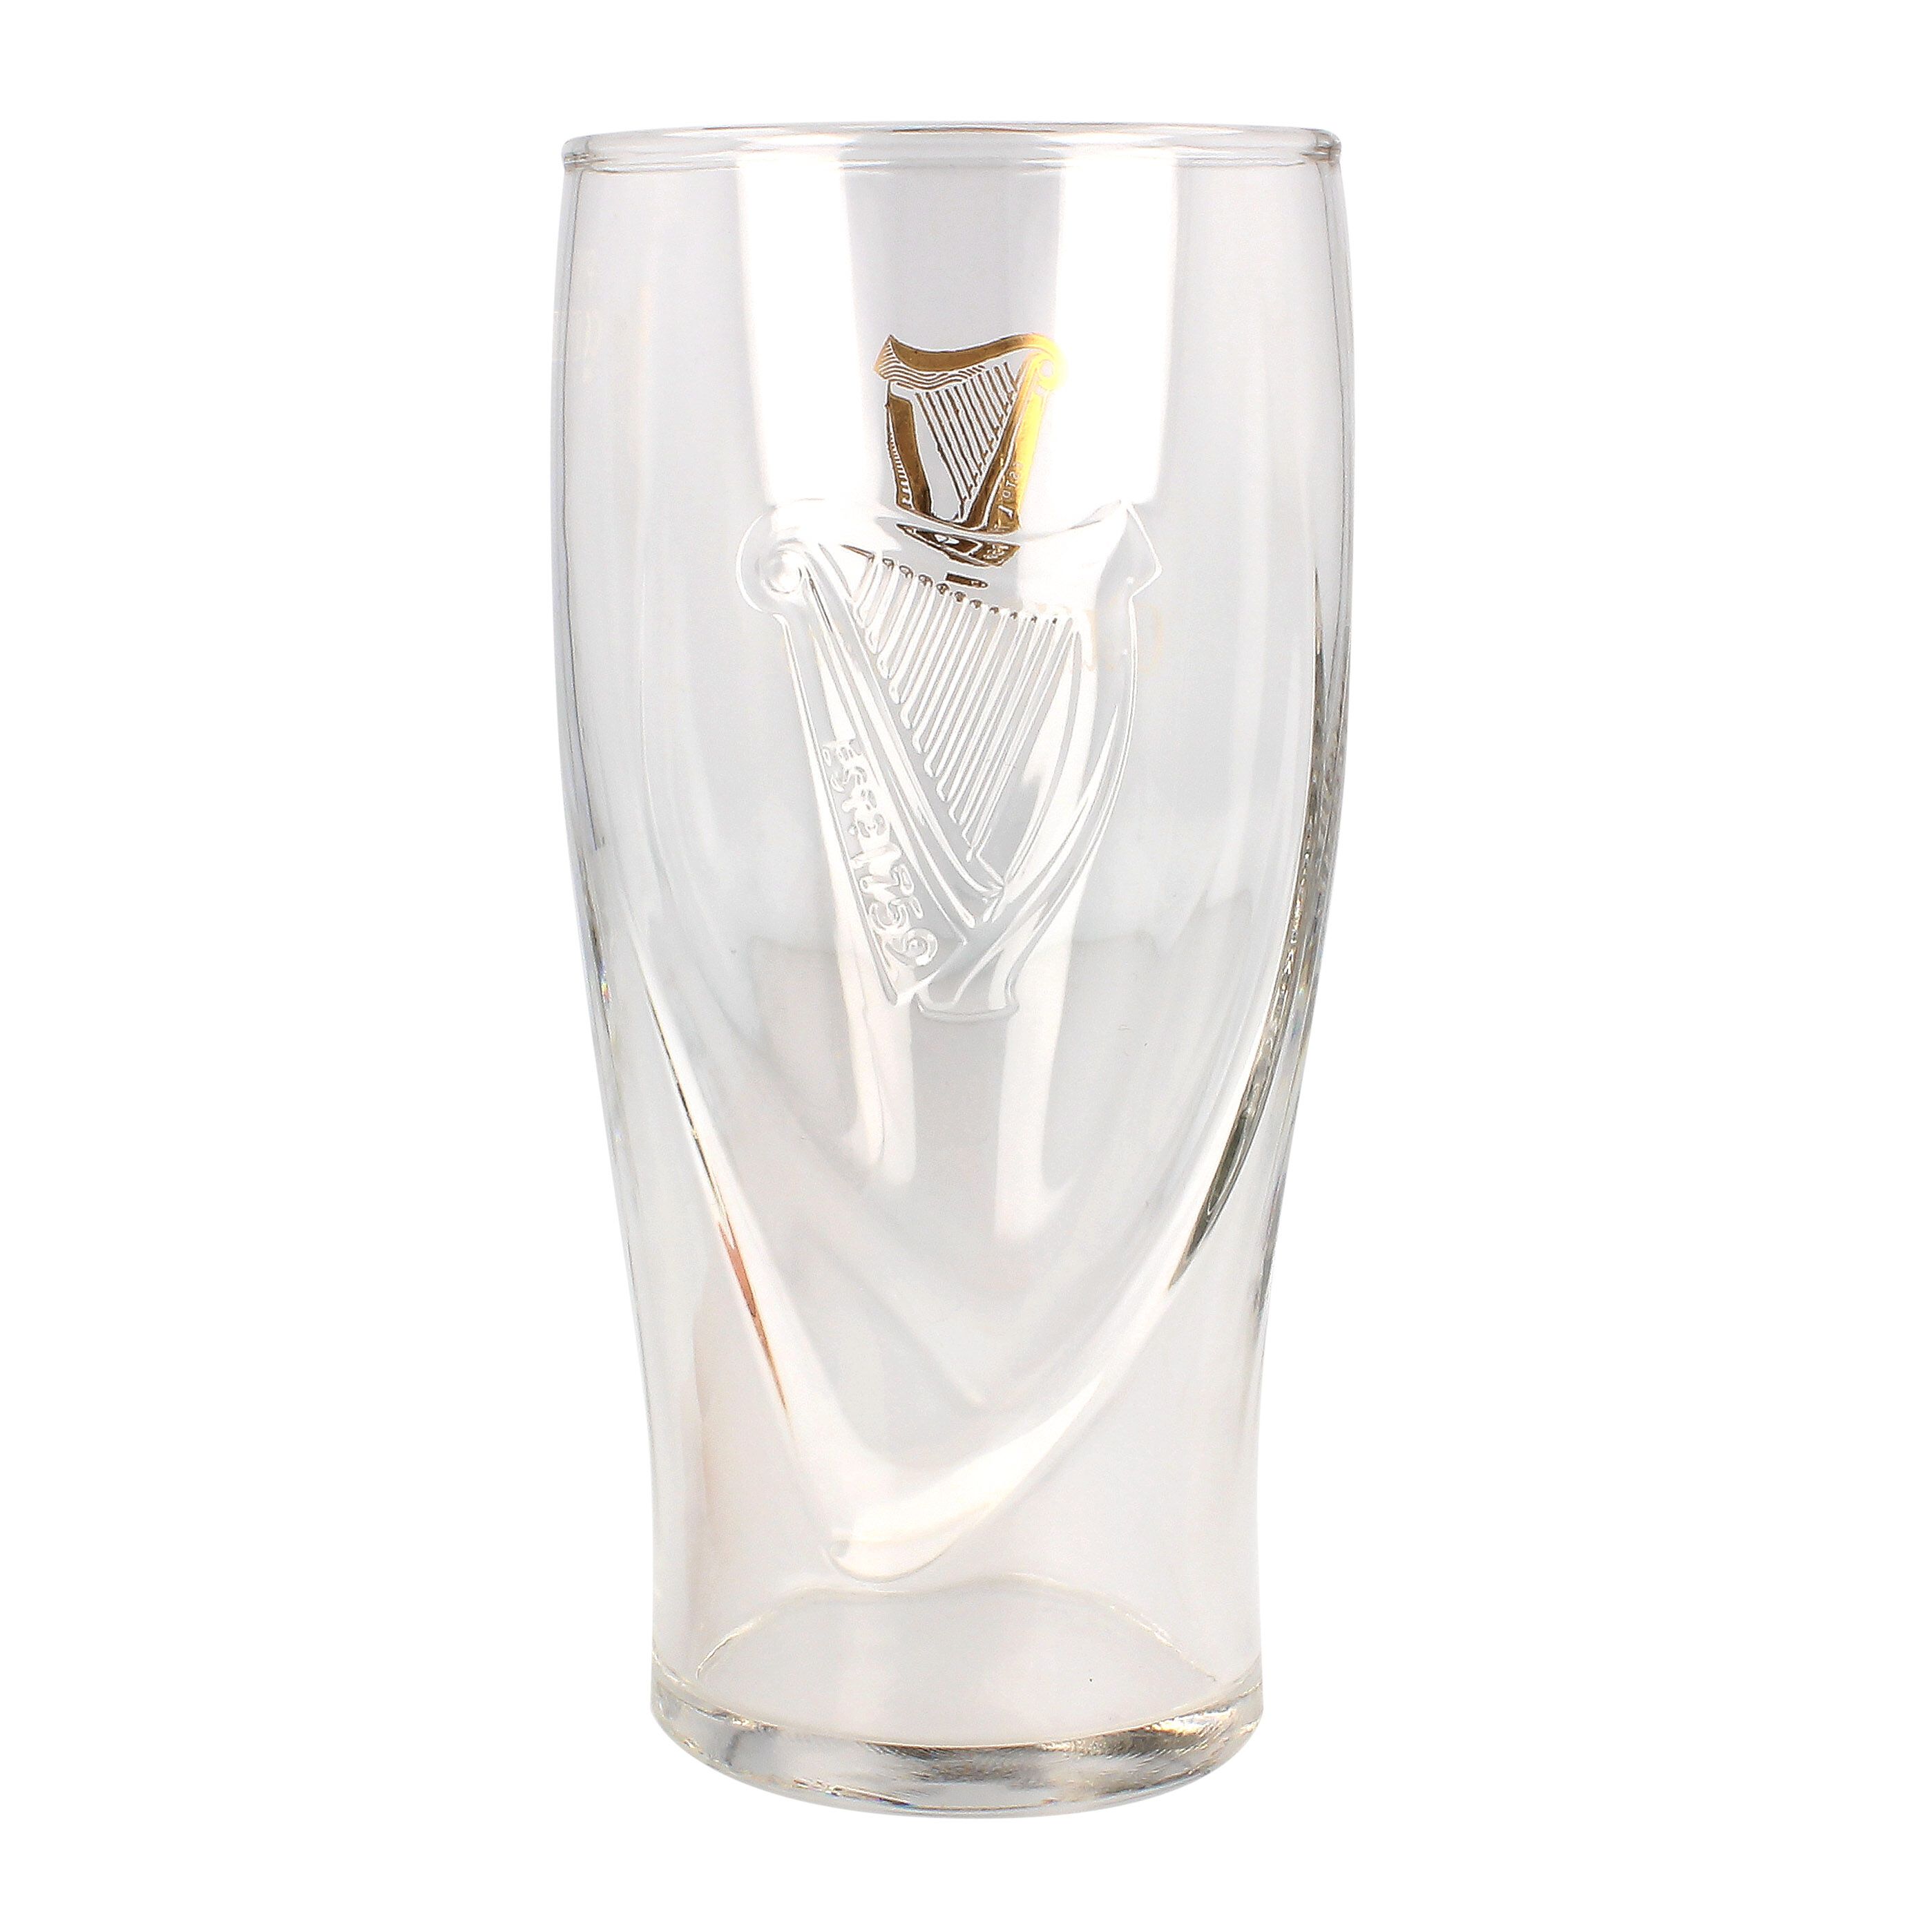 Guinness 20oz Gravity Pint Glass 